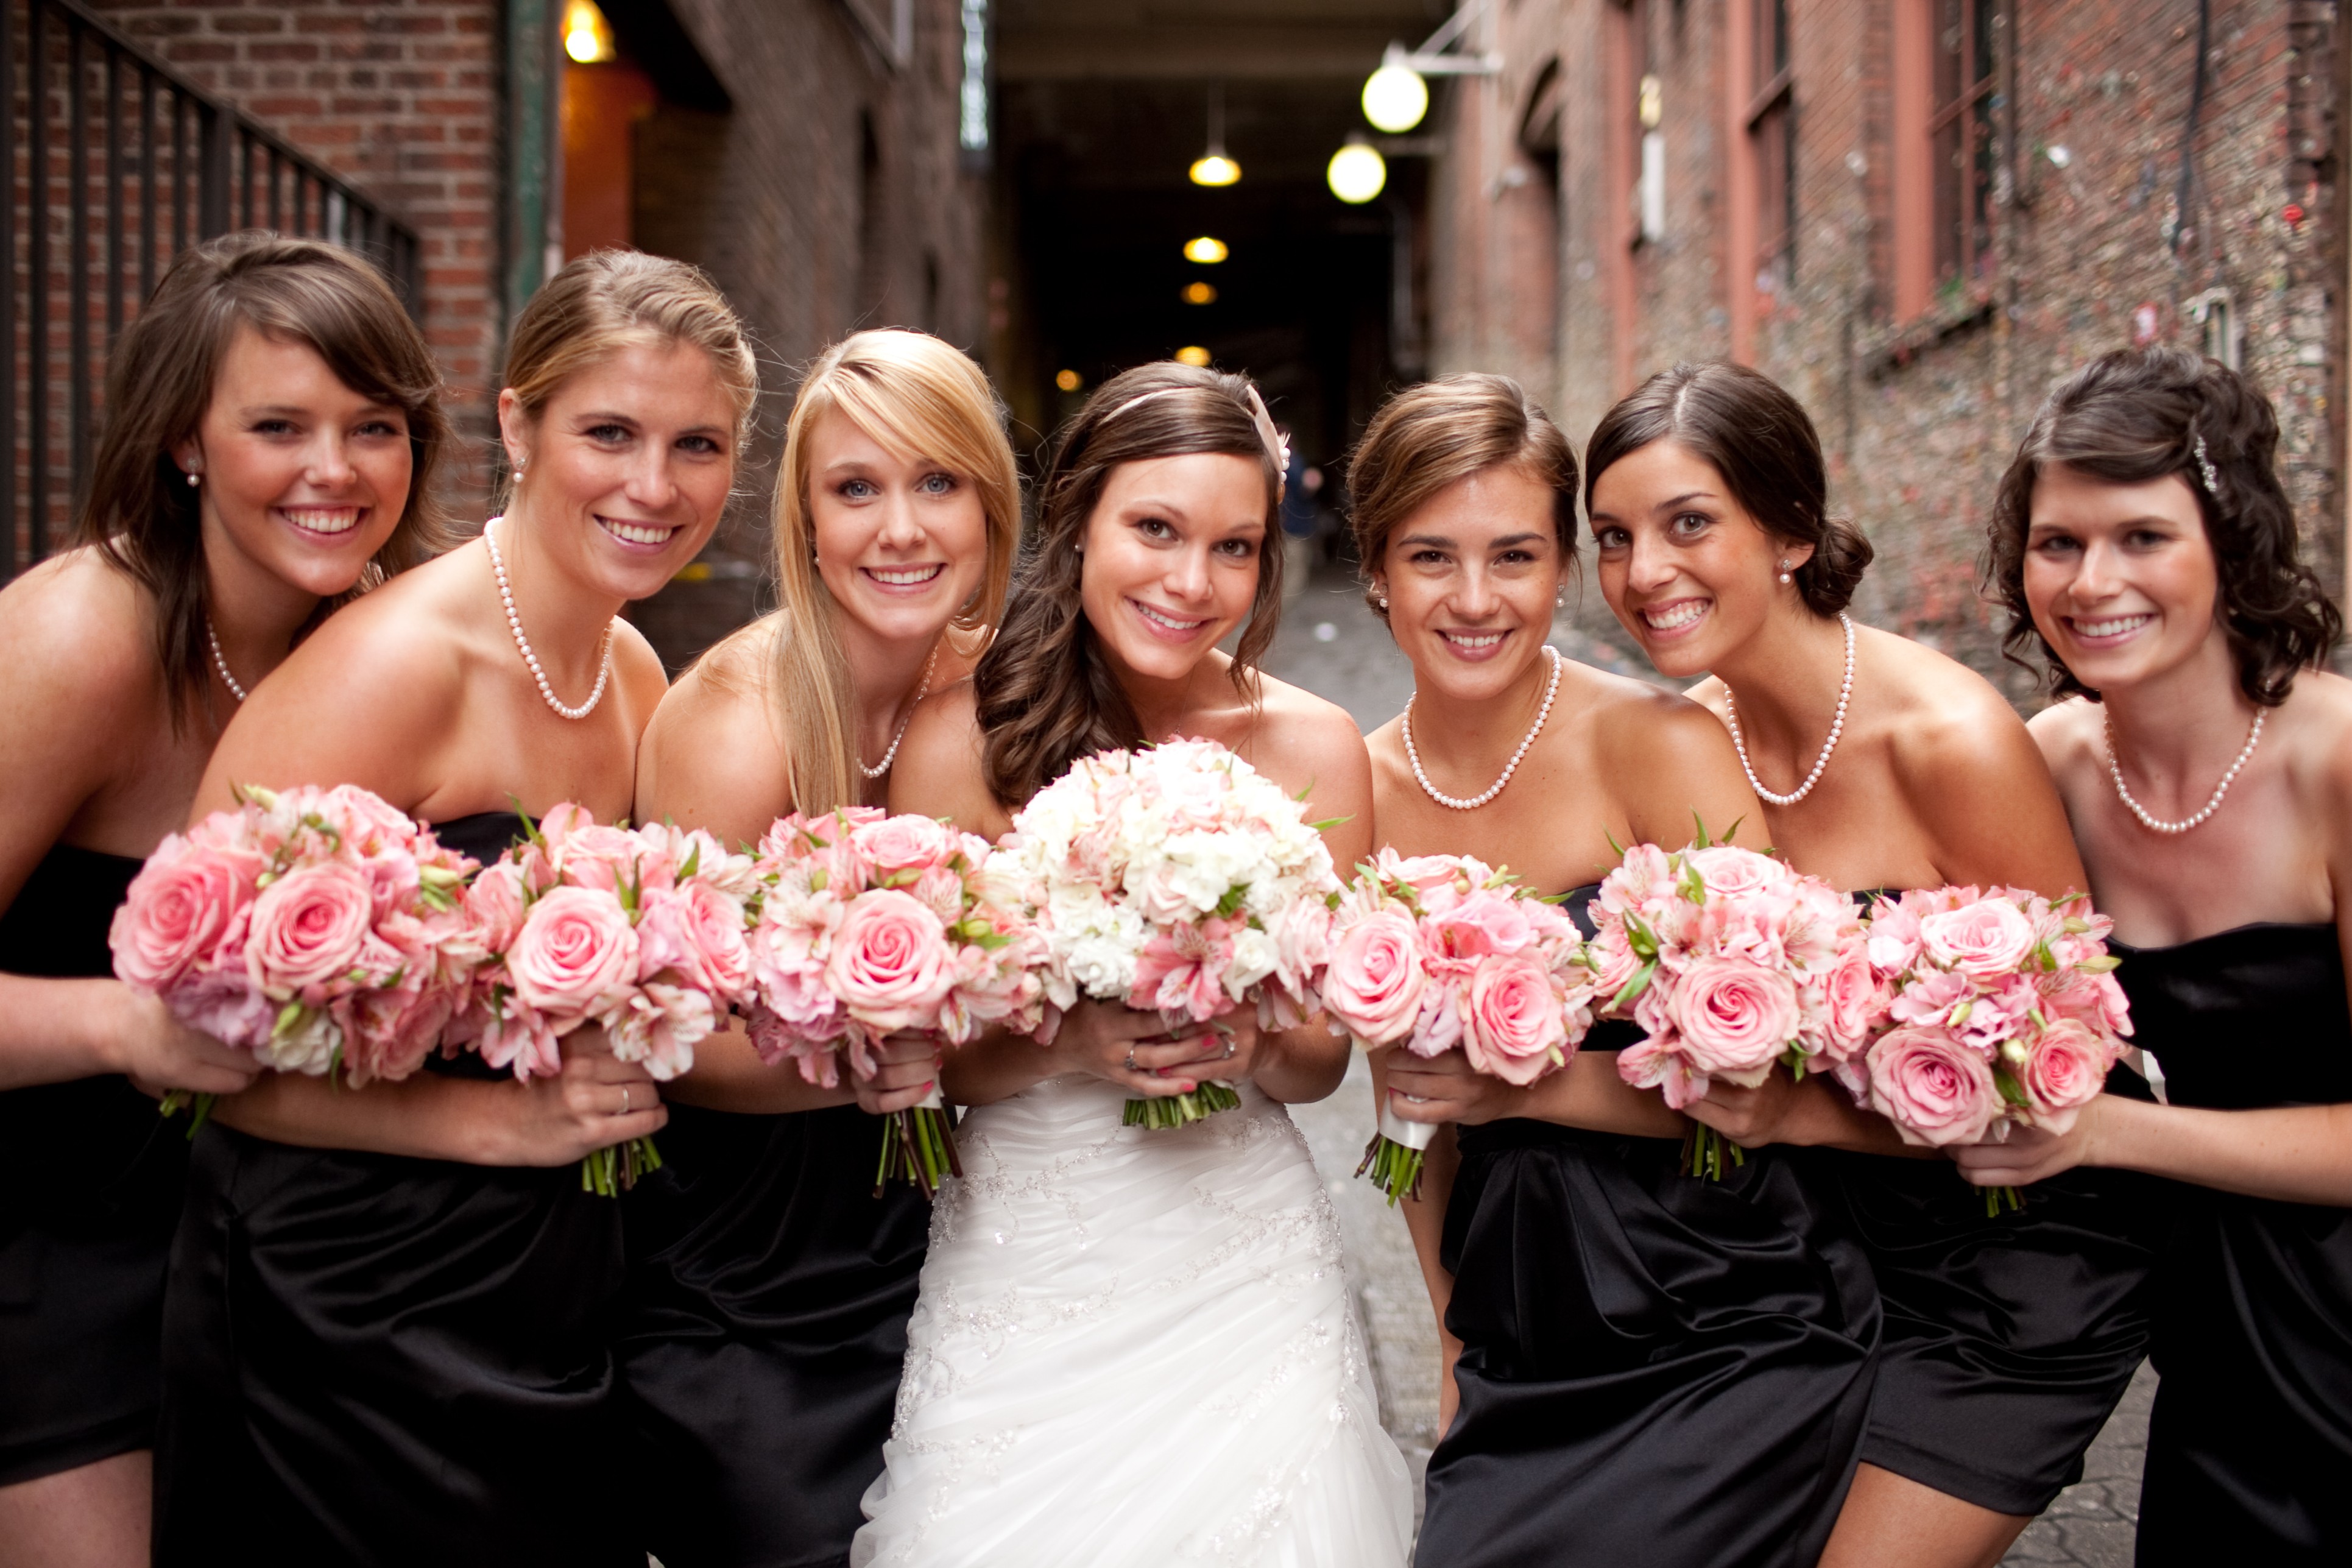 Фото невесты с подружками невесты